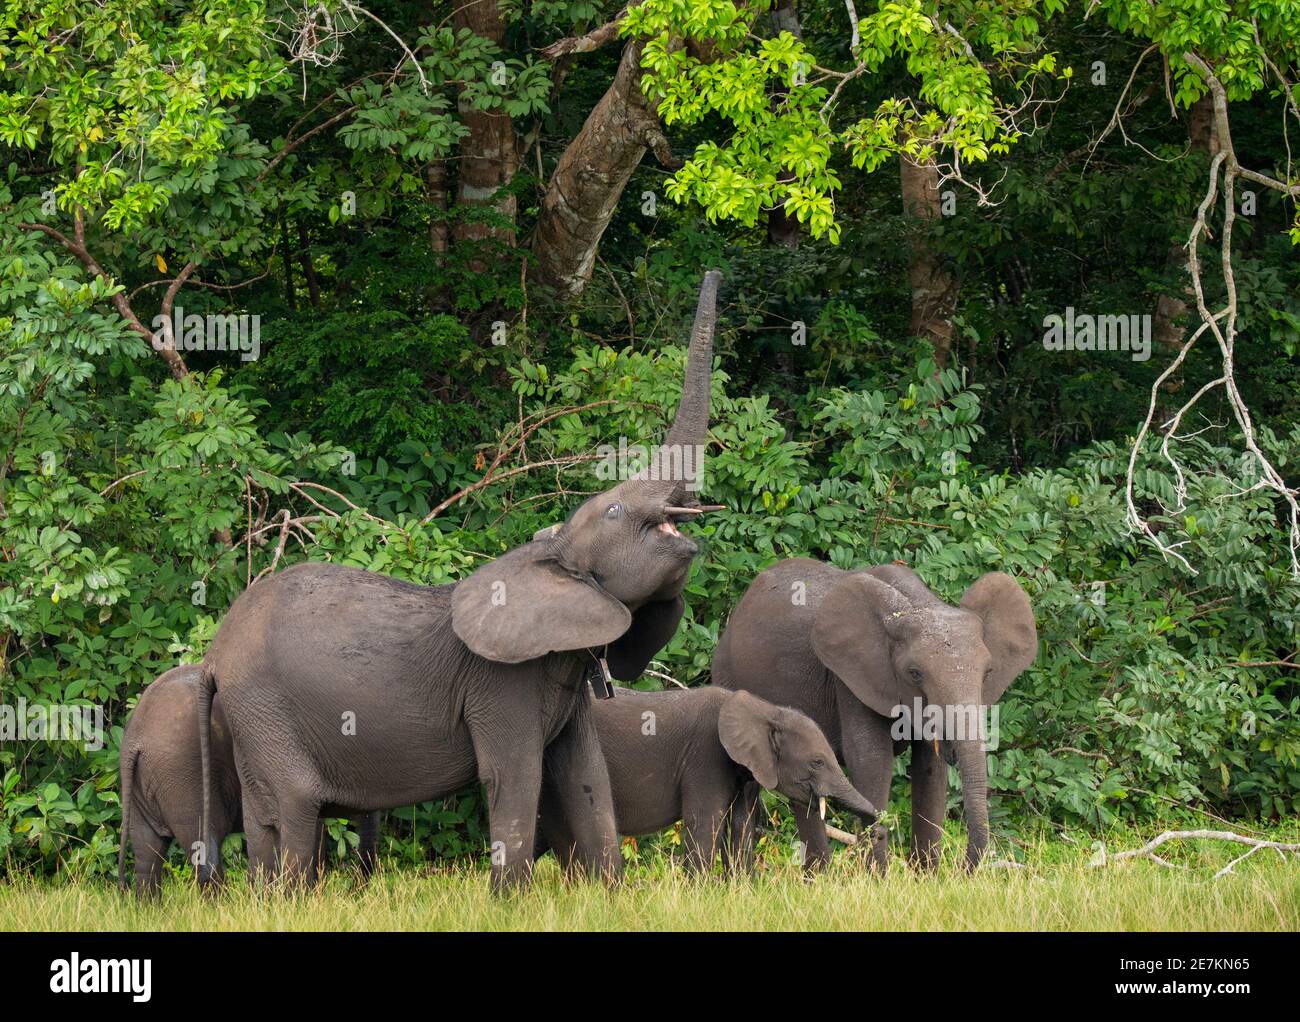 Afrikanischer Waldelefant (Loxodonta cyclotis), mit Rüssel, um Blätter auf Baum zu erreichen, Loango-Nationalpark, Gabun, Zentralafrika. Stockfoto